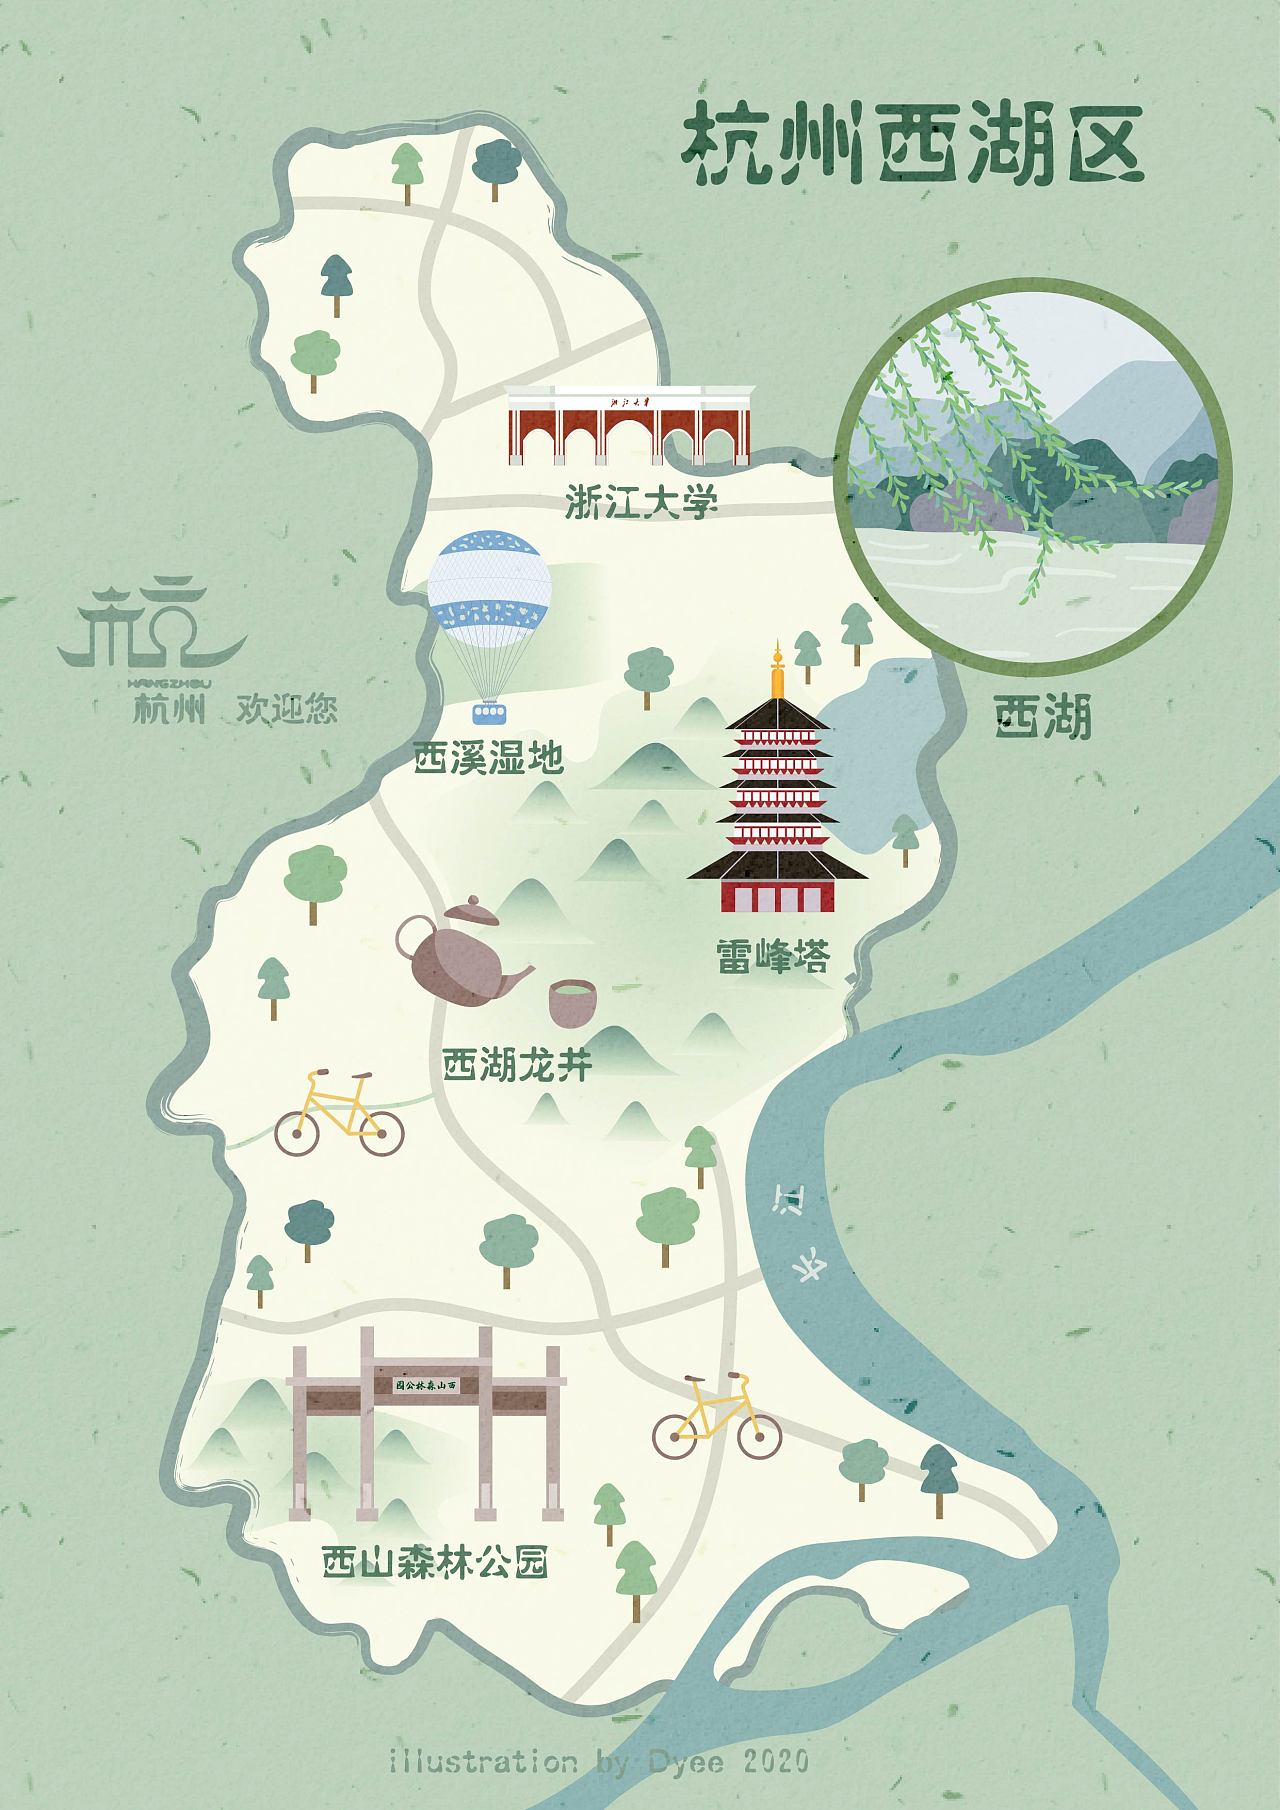 杭州西湖地图简易图片